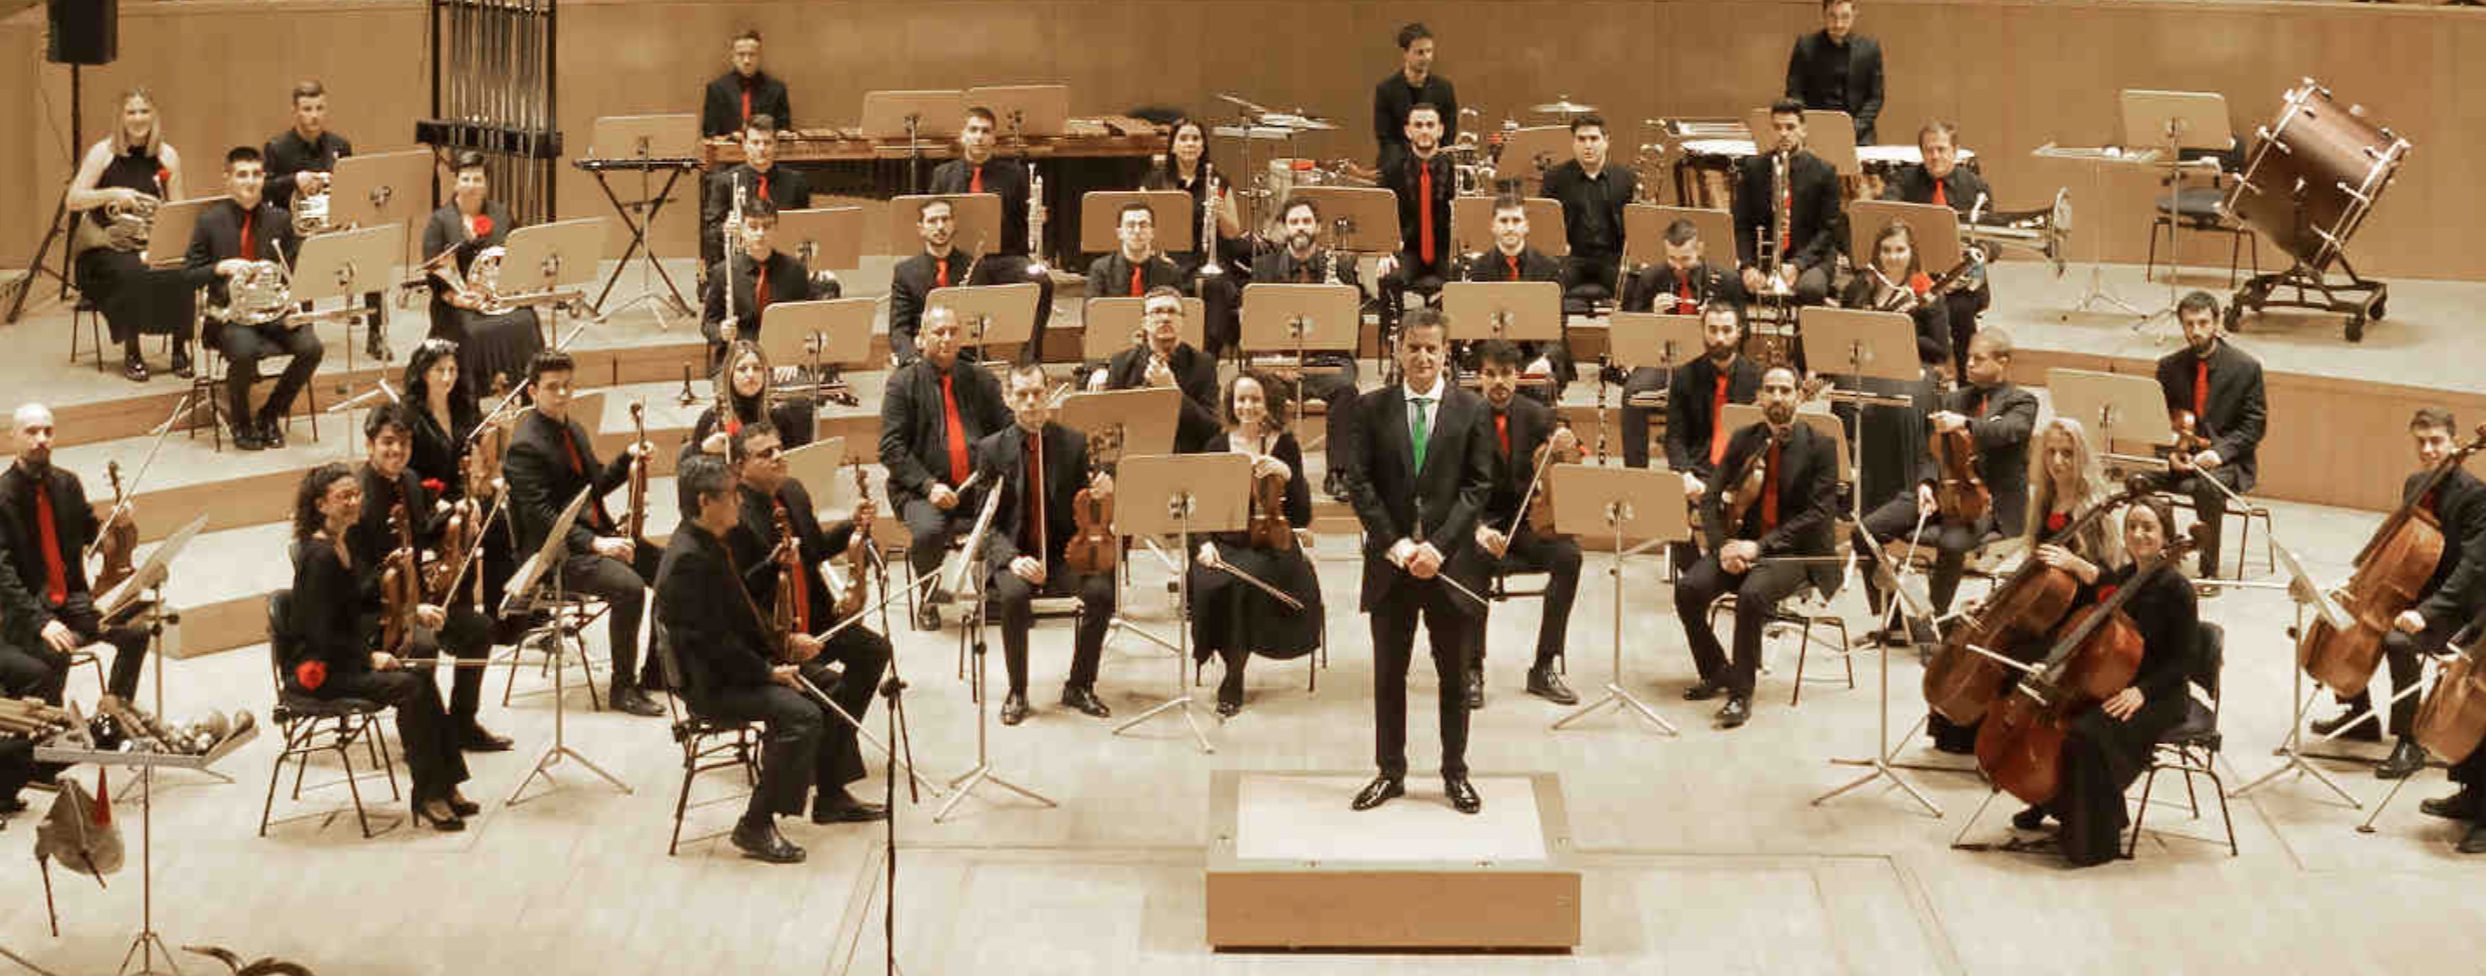 Una foto de la OFMAN, con Francisco-Antonio Moya en el podio, en el Auditorio Nacional de Música de Madrid / Foto: © OFMAN